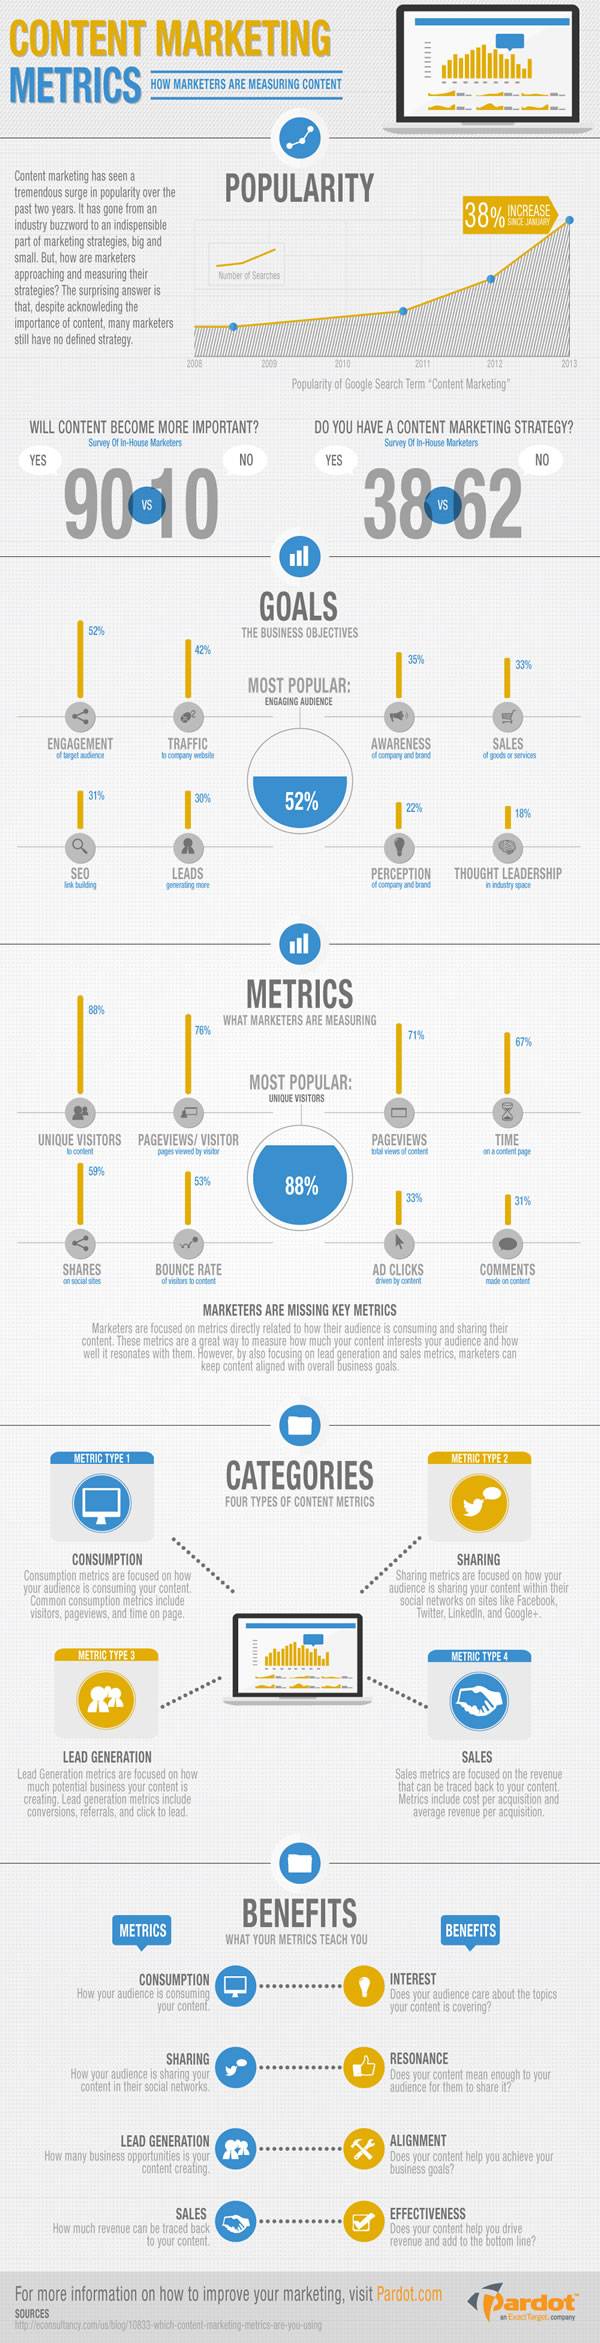 Content marketing metrics – how marketers measure content ROI – source Pardot